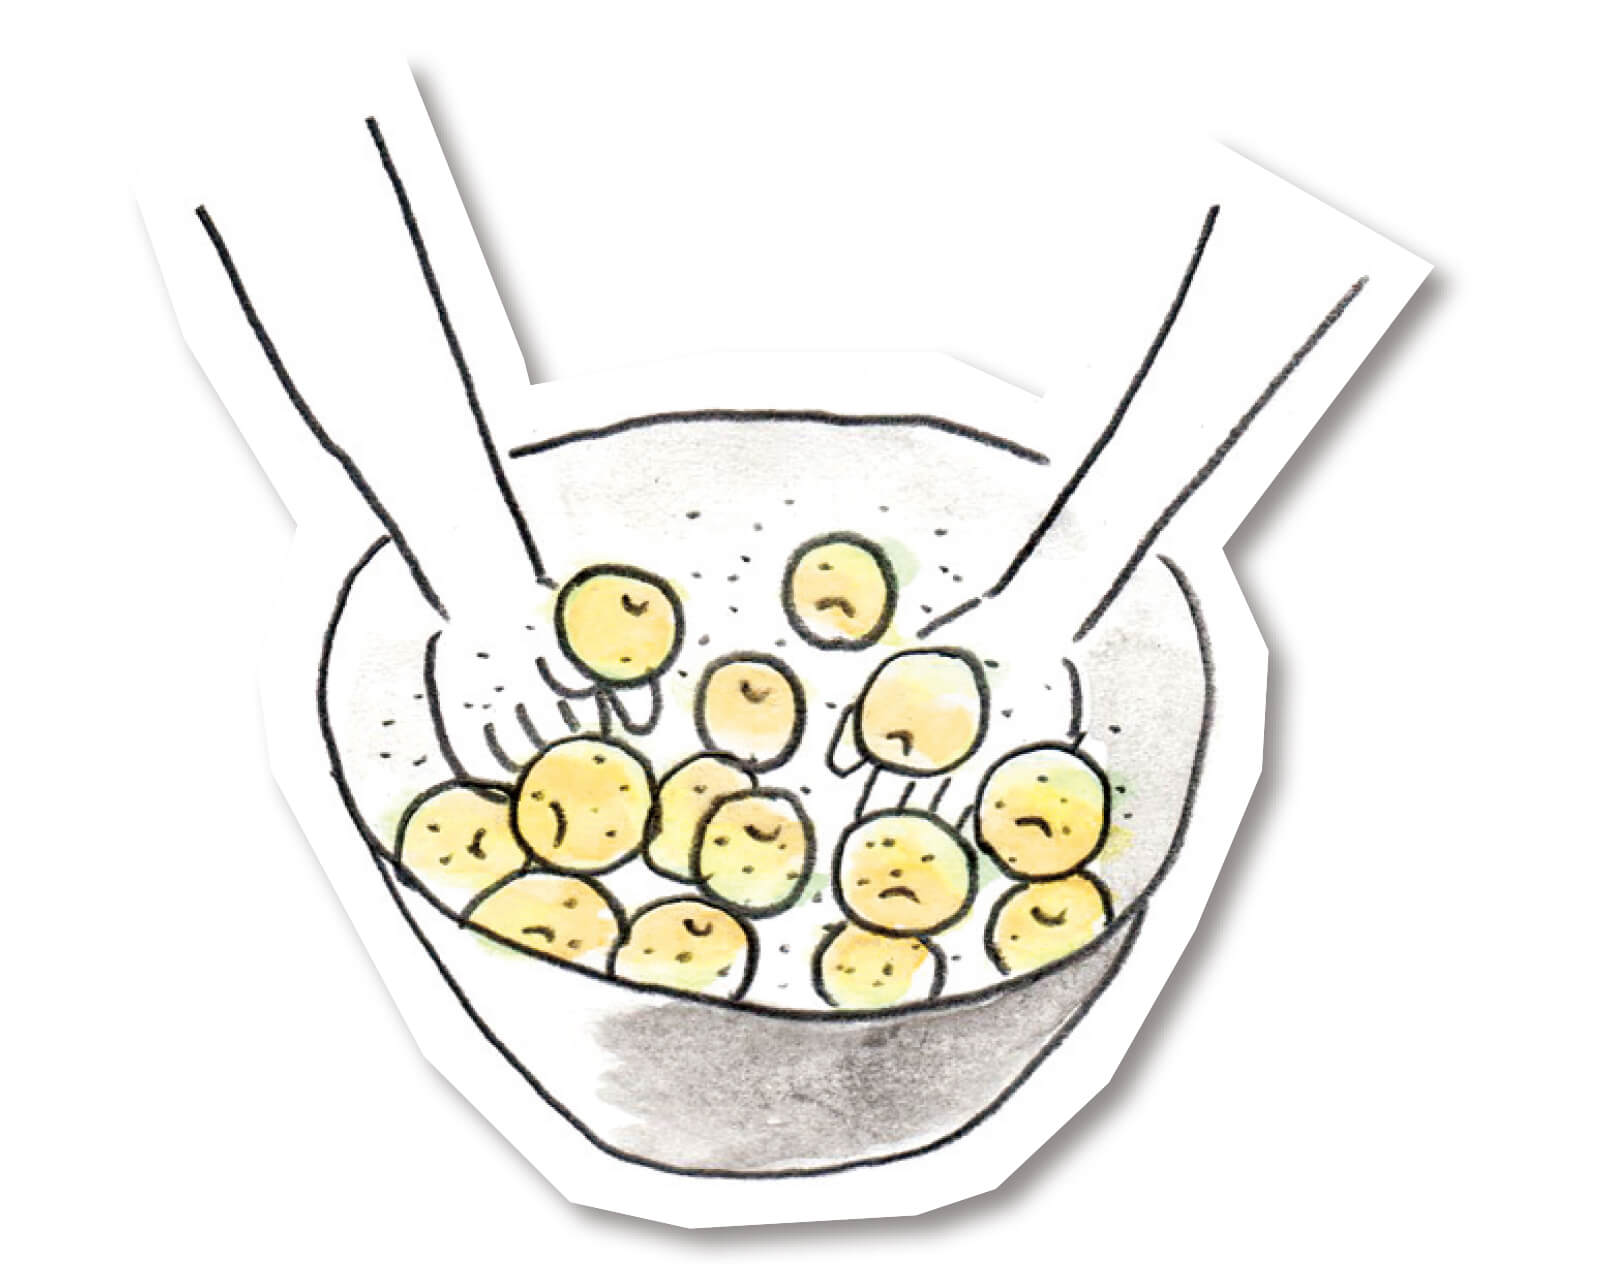 塩がわりに使える しょっぱい梅酢 レシピ ワタナベマキさん Lee ページ 3 4